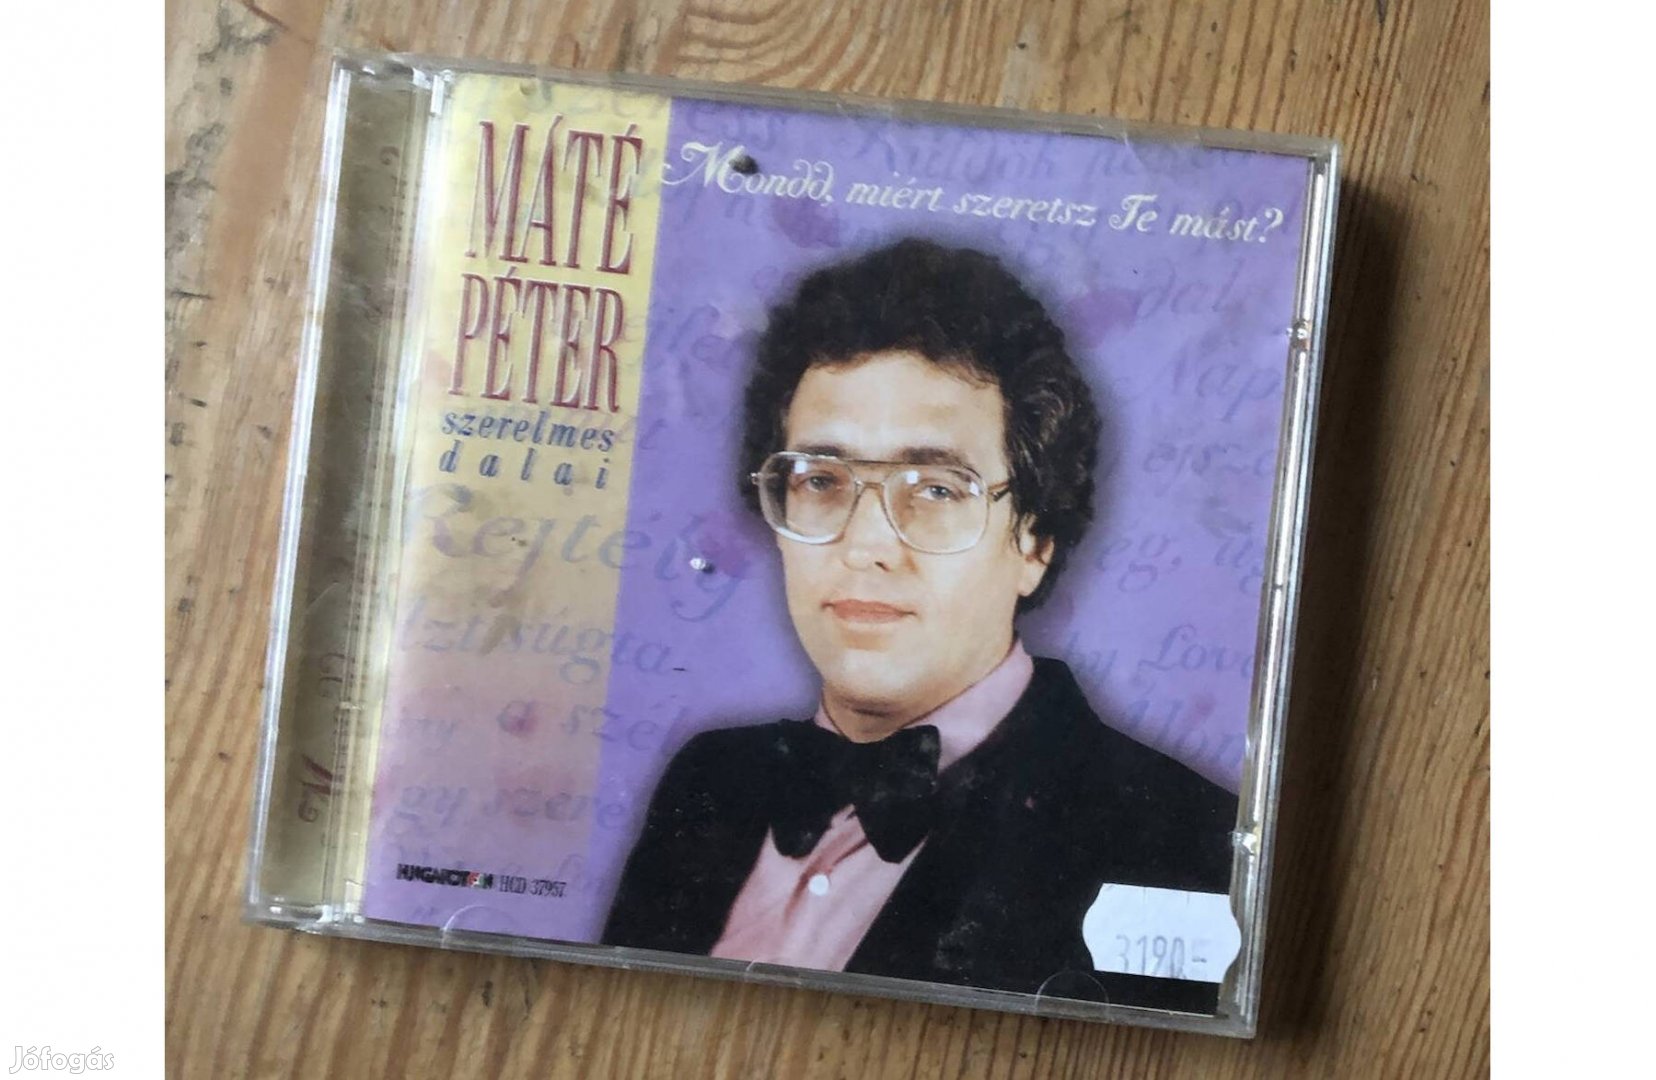 Máté Péter szerelmes dalai CD 1800 Ft :Lenti